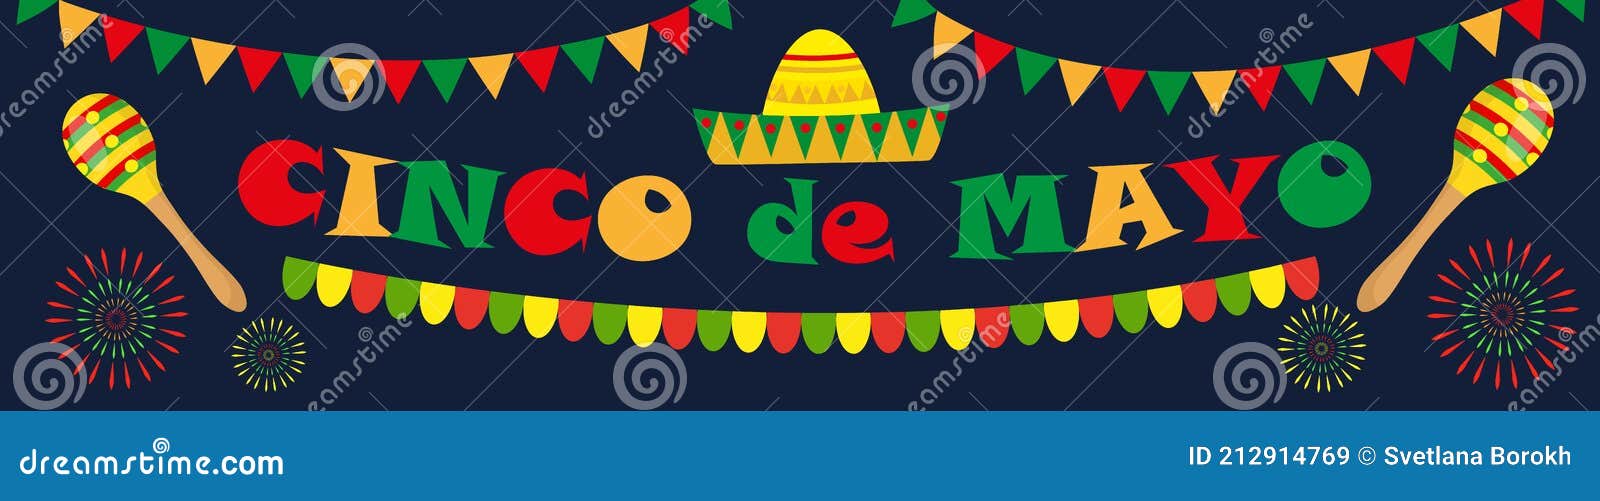 cinco de mayo banner. mexican template for your  with sambrero, maracas.  